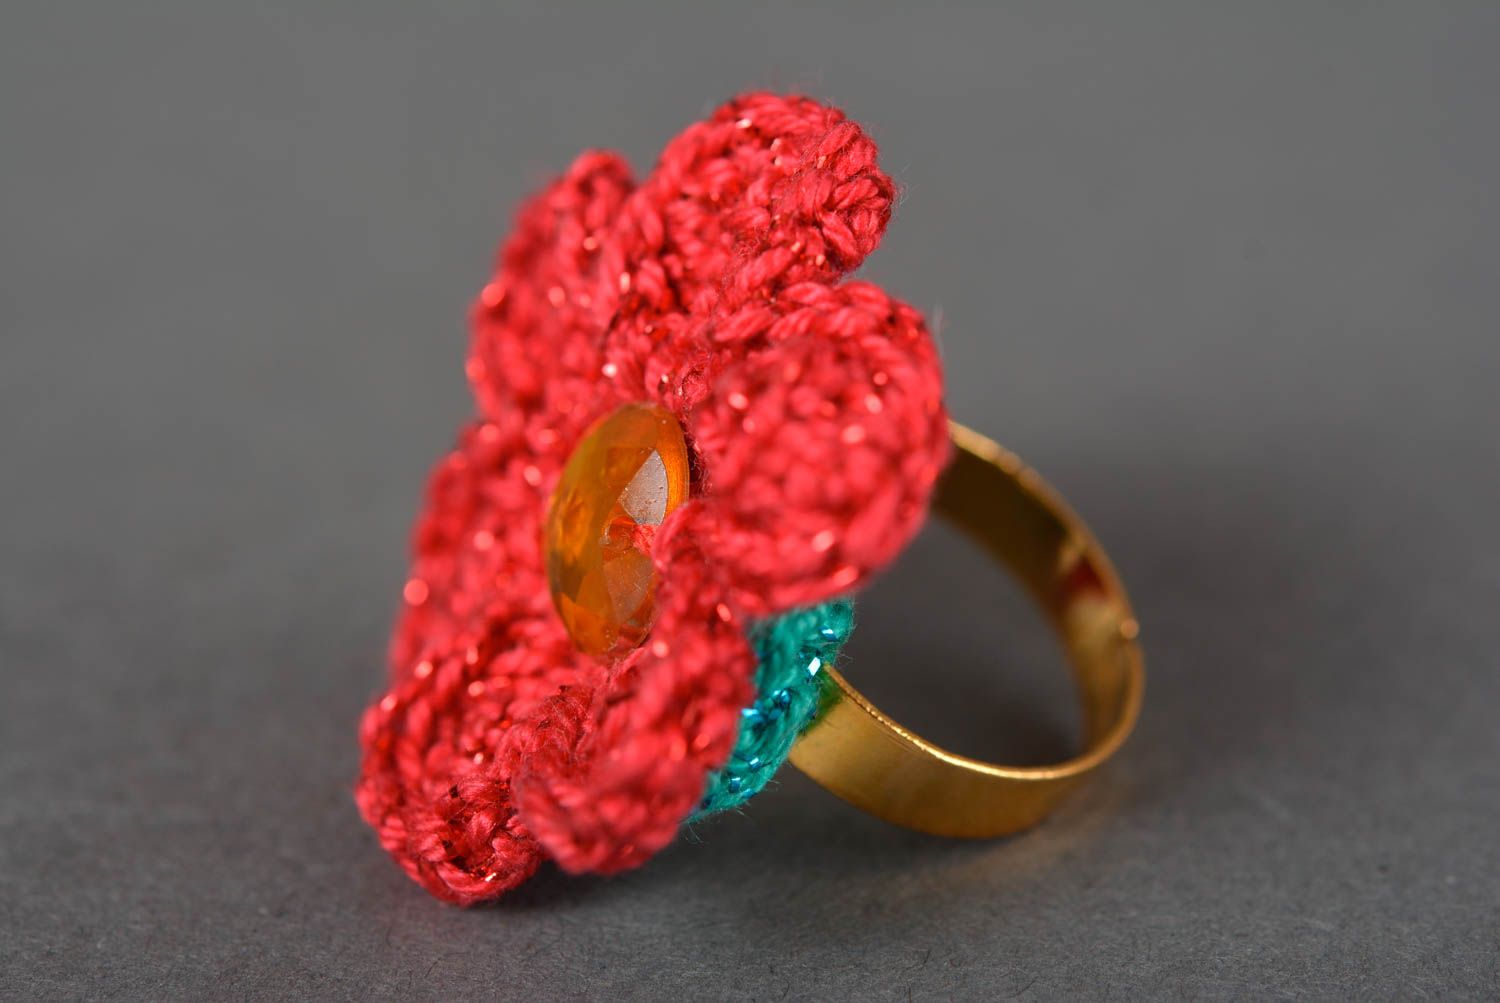 Crochet Flower Ring | For Beginners Very Easy Tutorial 🧶 - YouTube